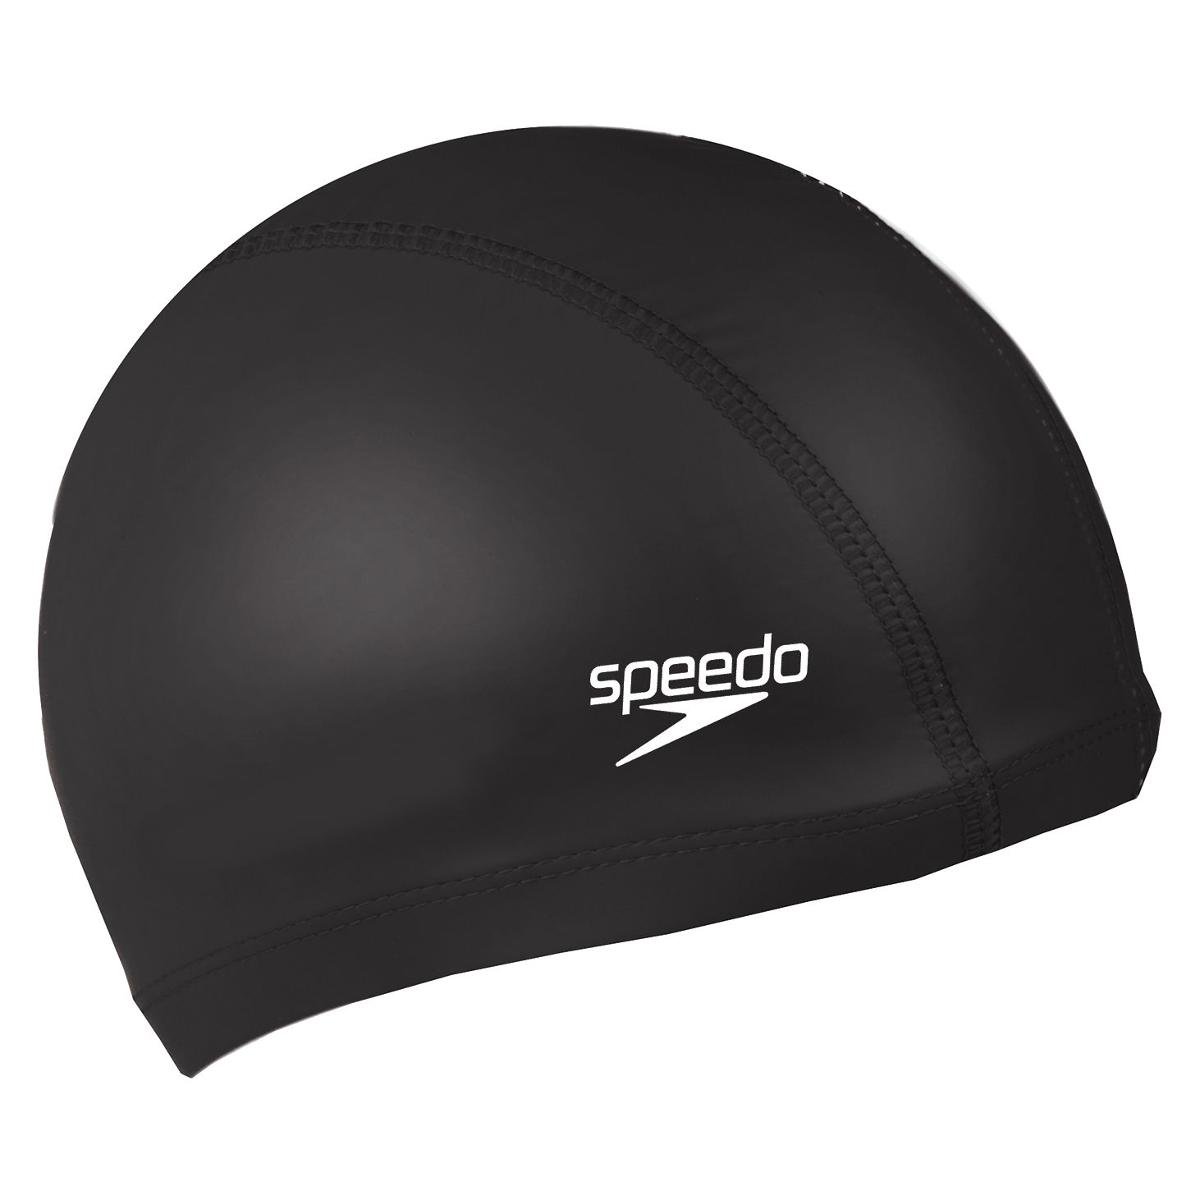 Speedo Pace Cap 720640 1 dla mężczyzn naziemny czepek pływacki Czarny, czarny, jeden rozmiar 5050995632965